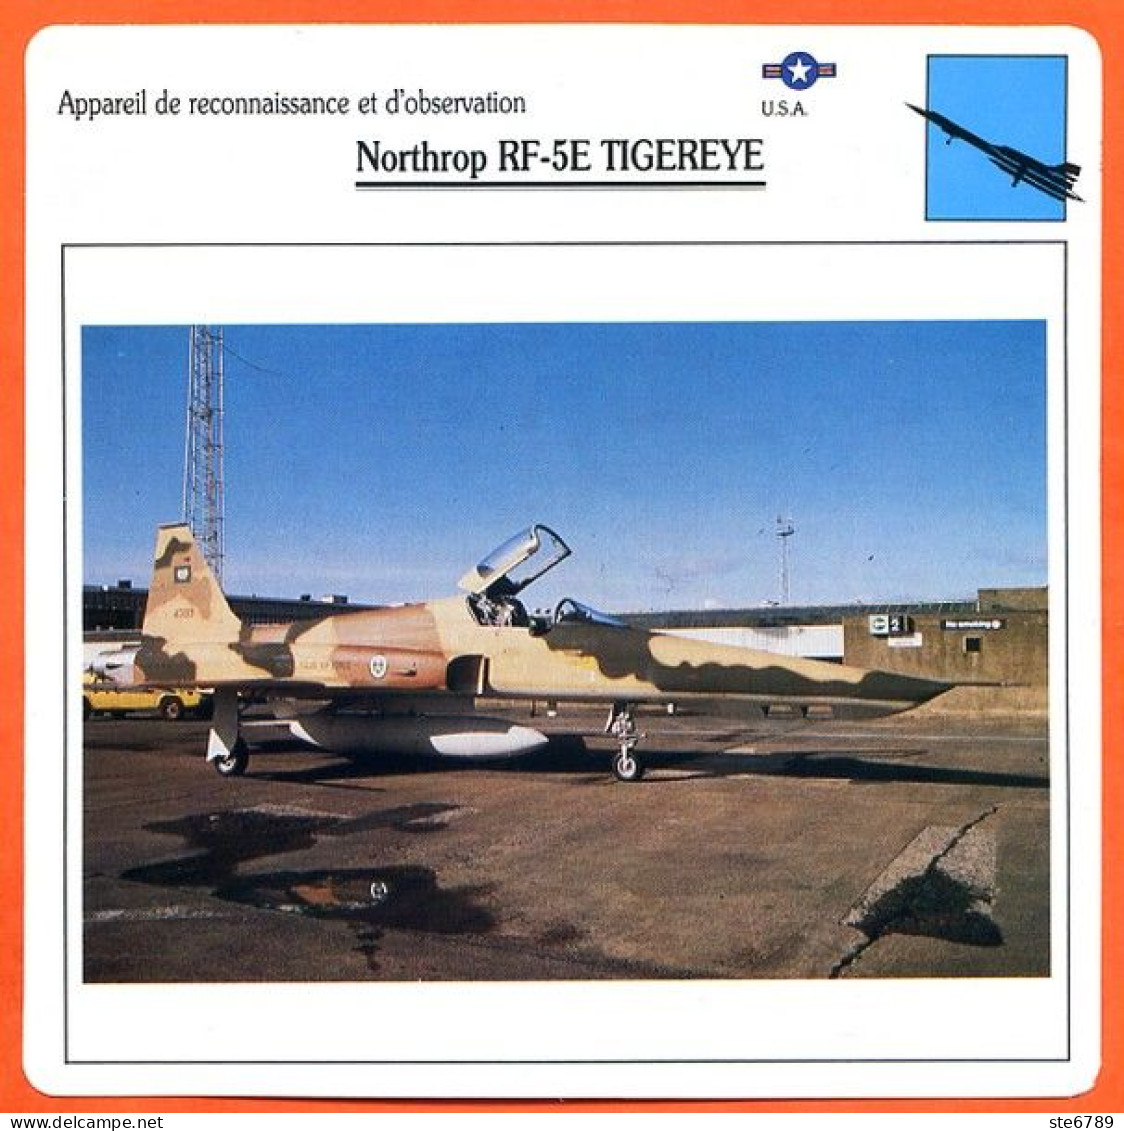 Fiche Aviation Northrop RF 5E TIGEREYE / Avion Reconnaissance Et Observation USA  Avions - Vliegtuigen